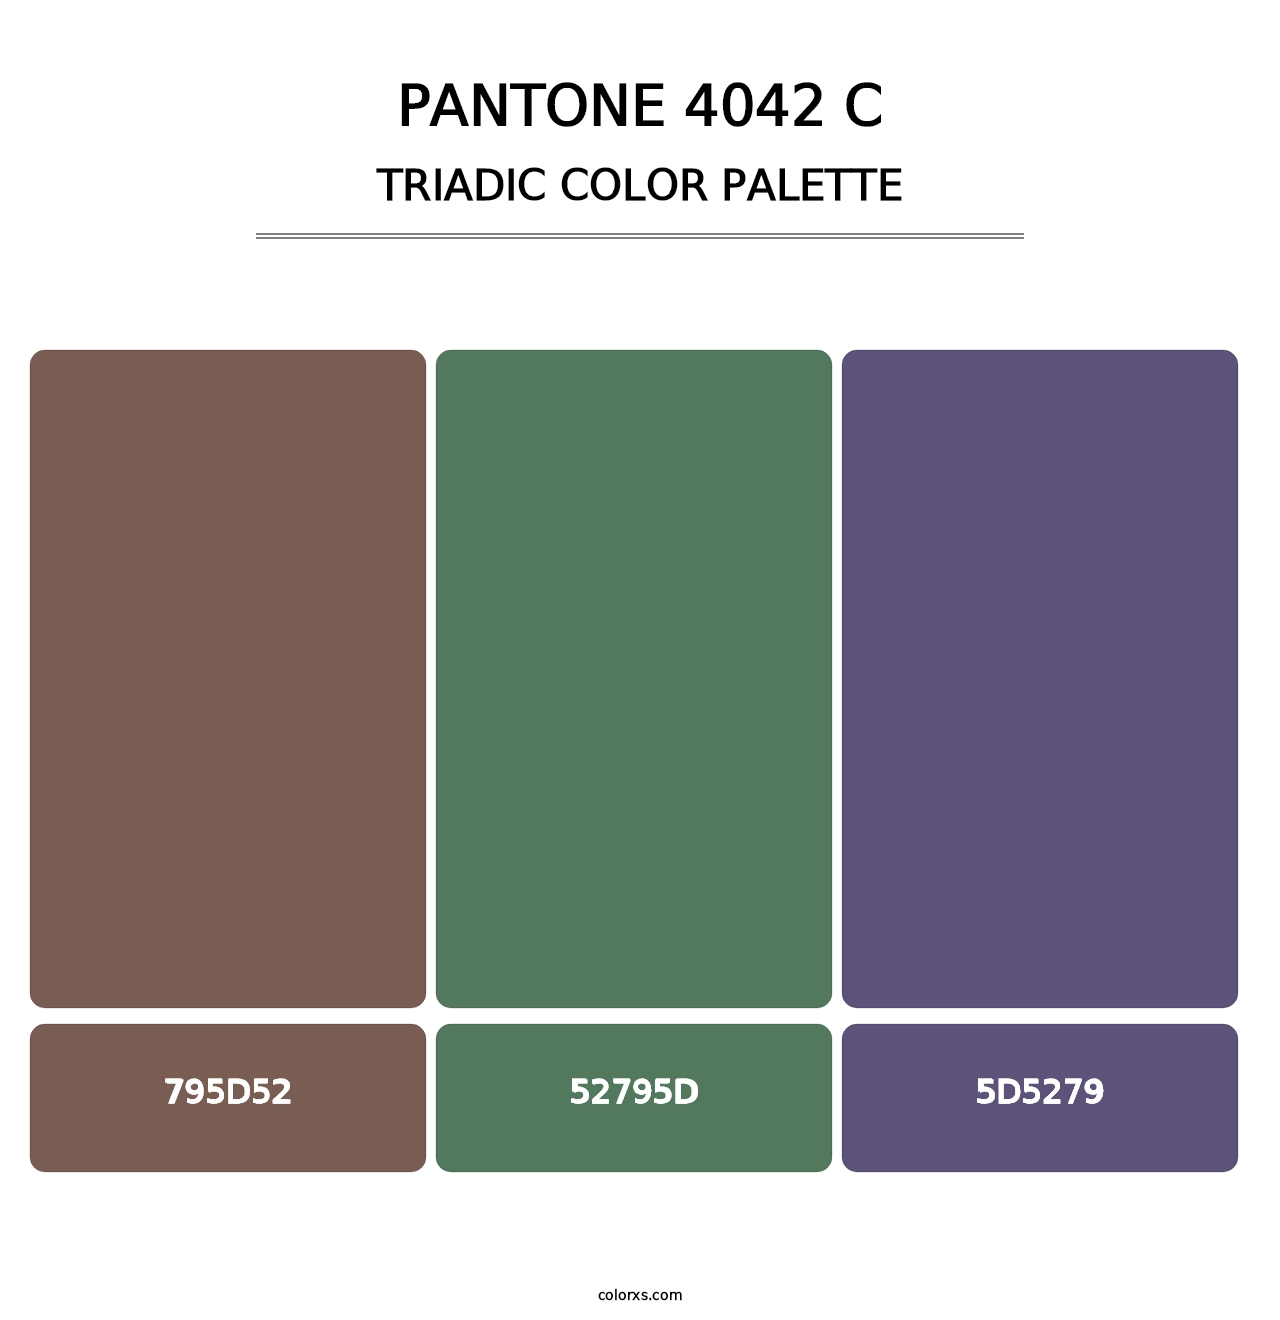 PANTONE 4042 C - Triadic Color Palette